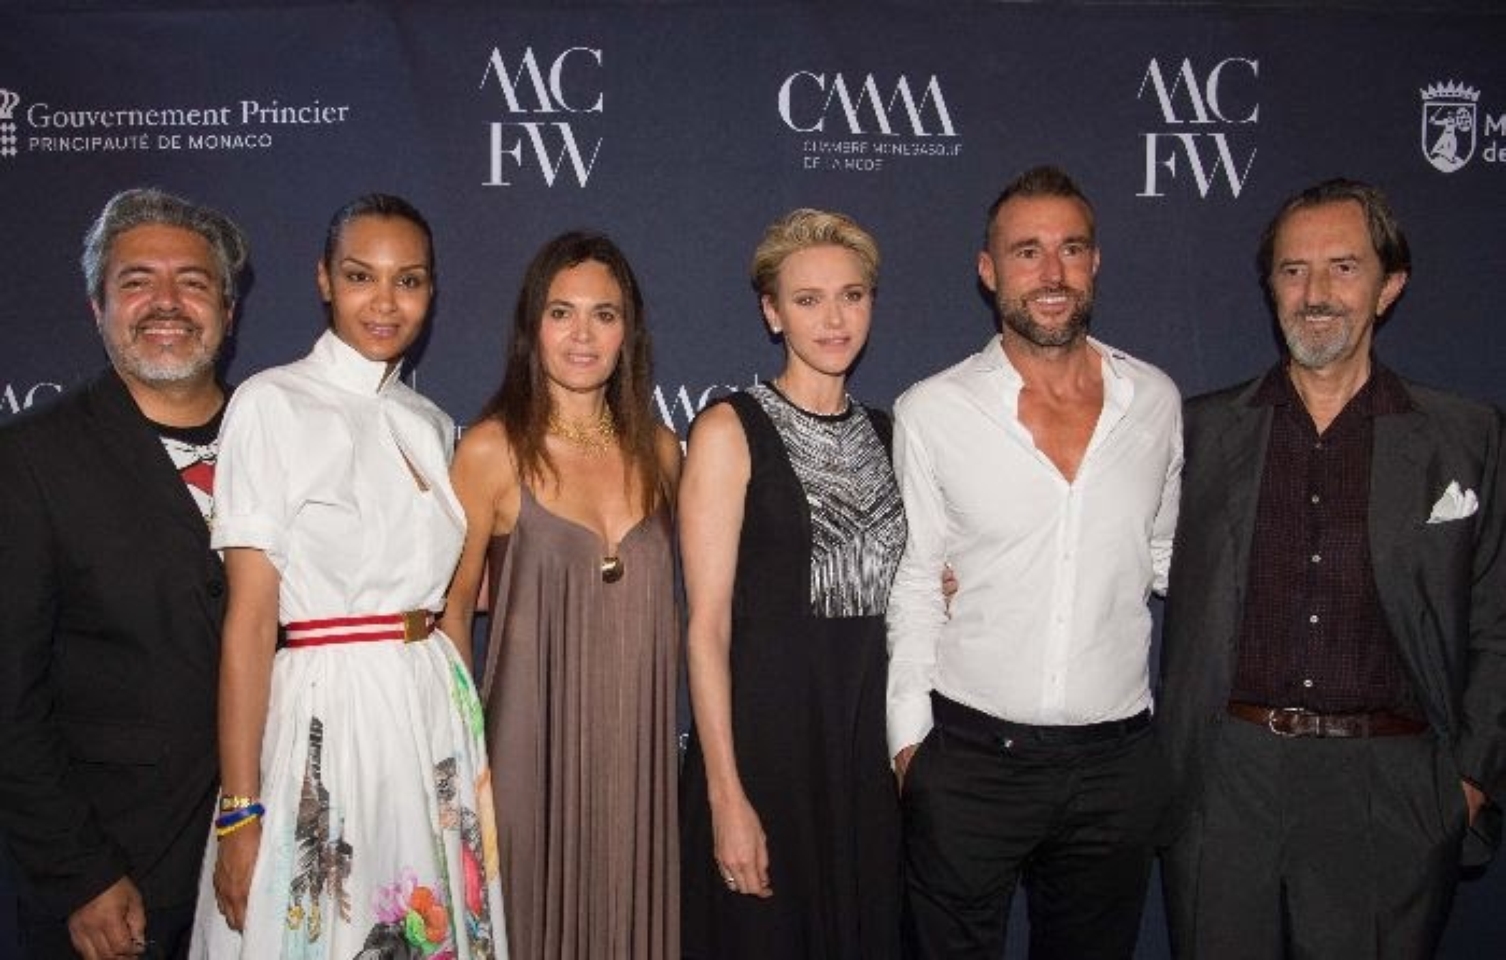  Prestige in Monte-Carlo Fashion week